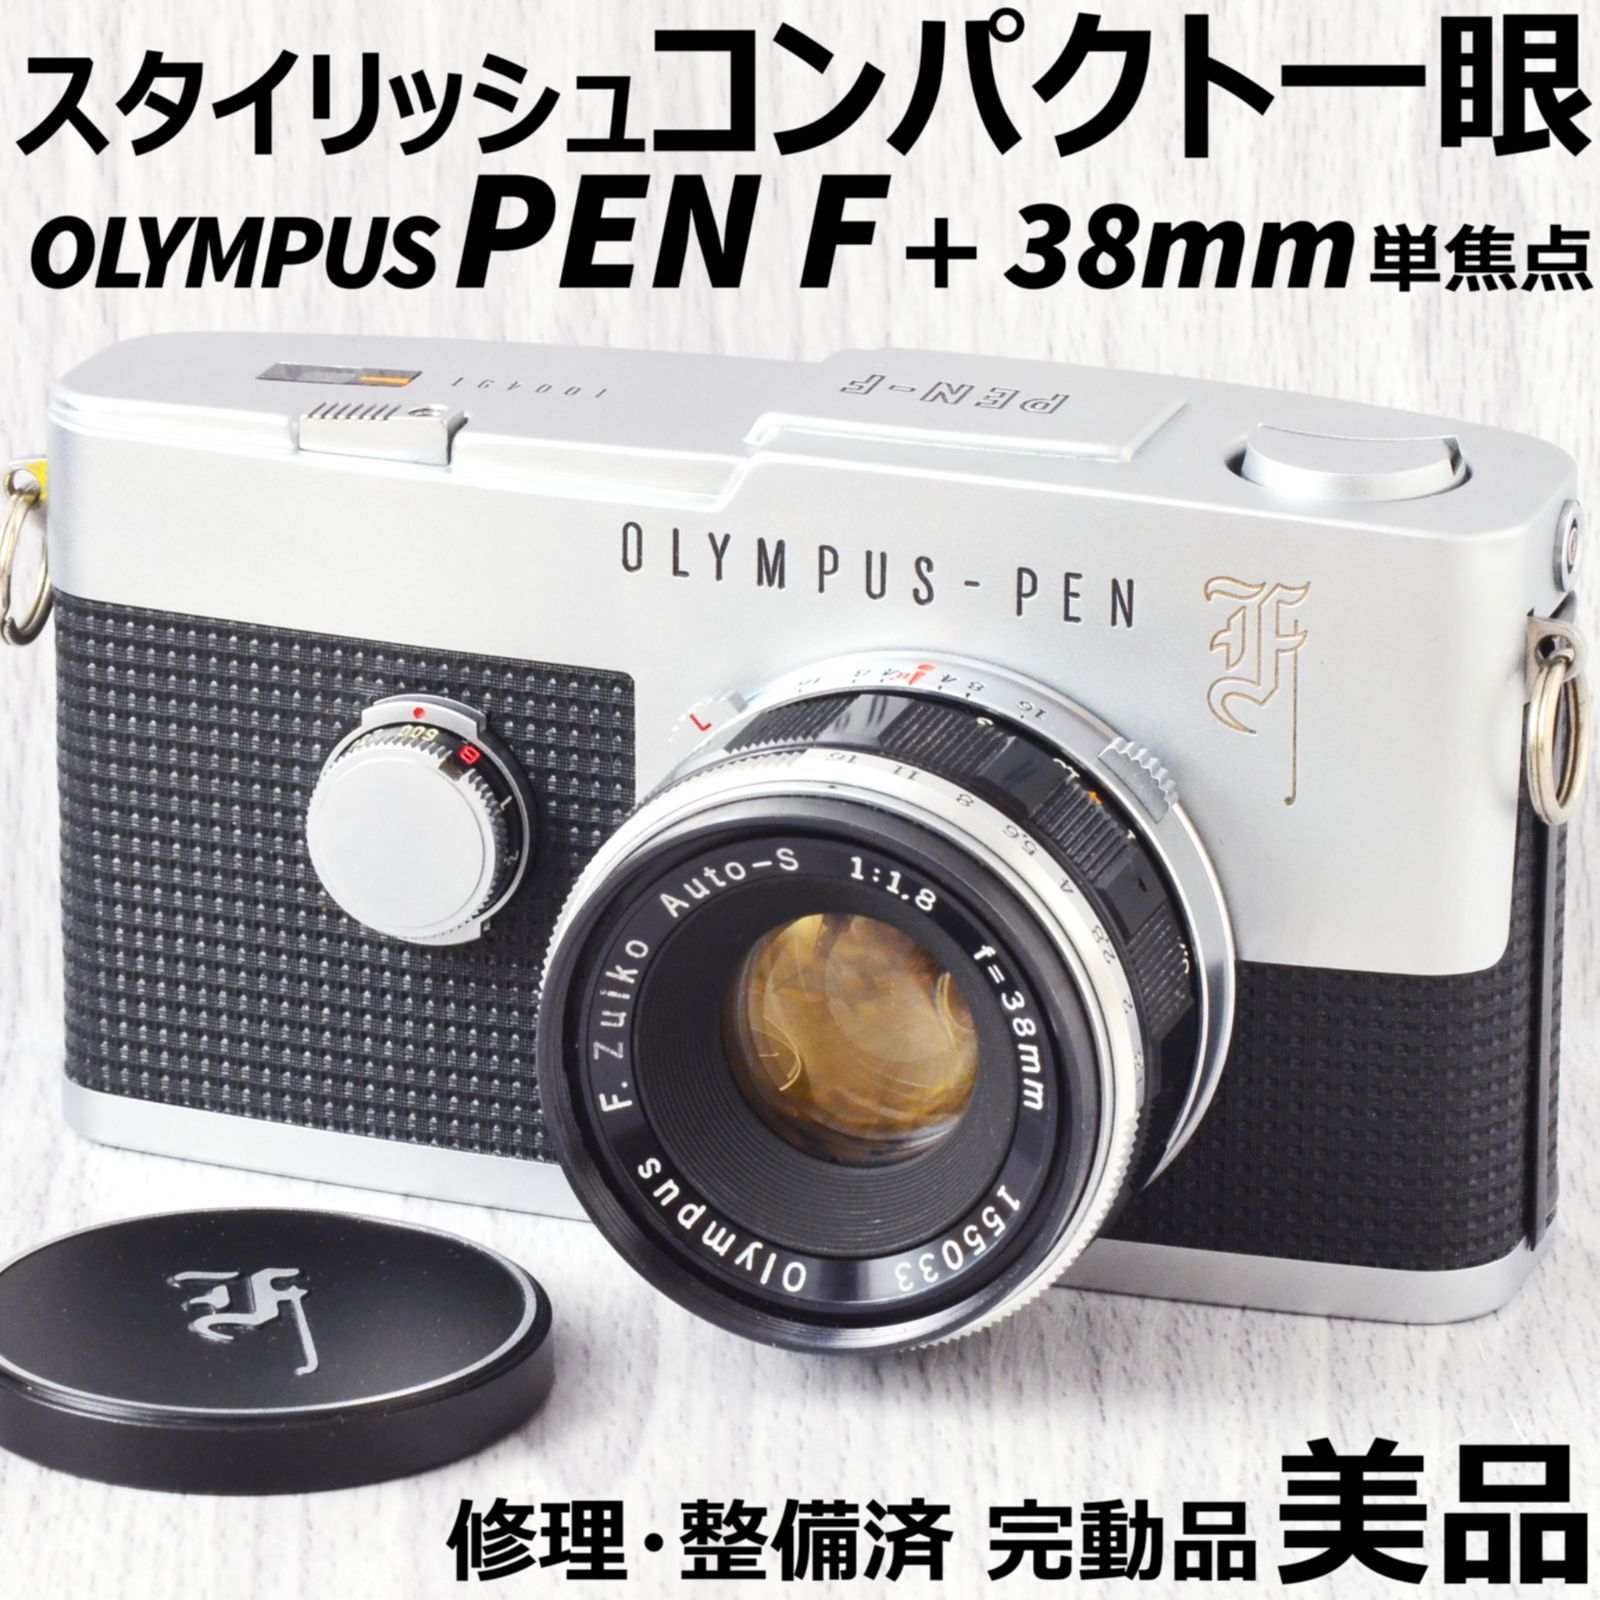 美品 OLYMPUS PEN F + 38mm f1.8 修理・整備済 完動品-